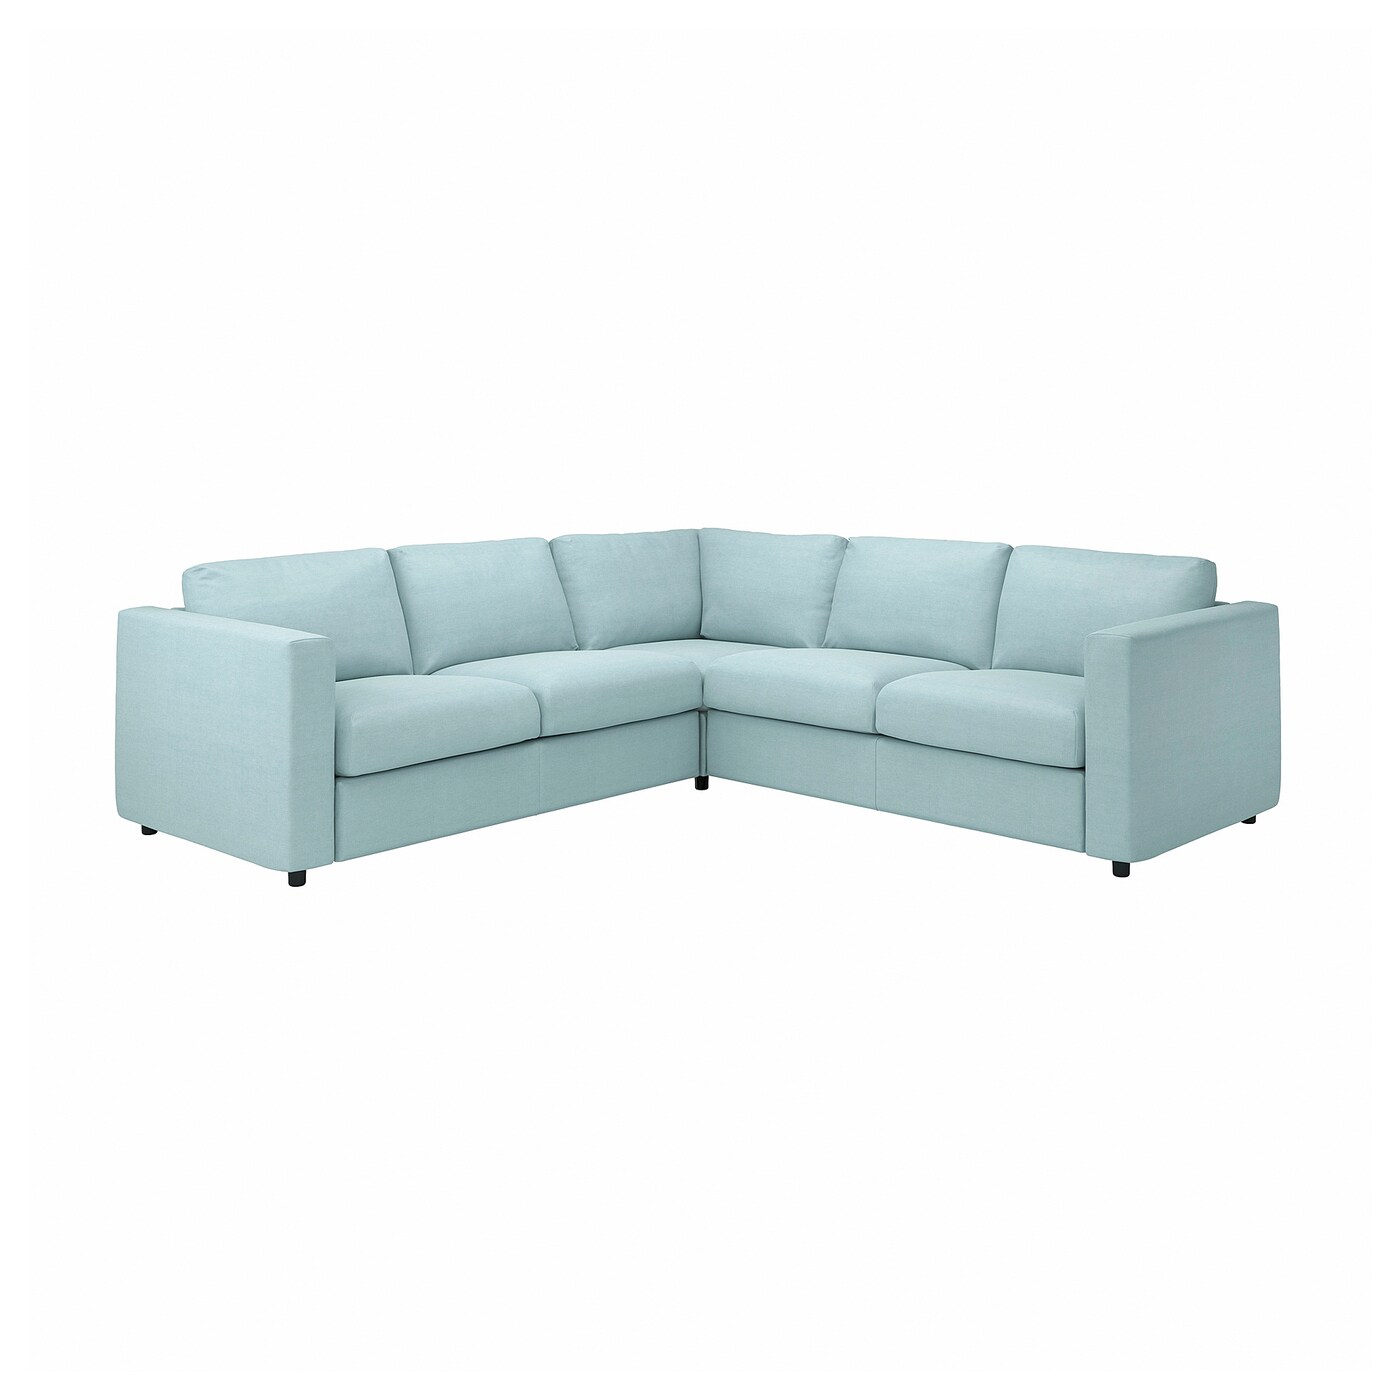 ВИМЛЕ 4-местный угловой диван, Саксемара светло-синий VIMLE IKEA